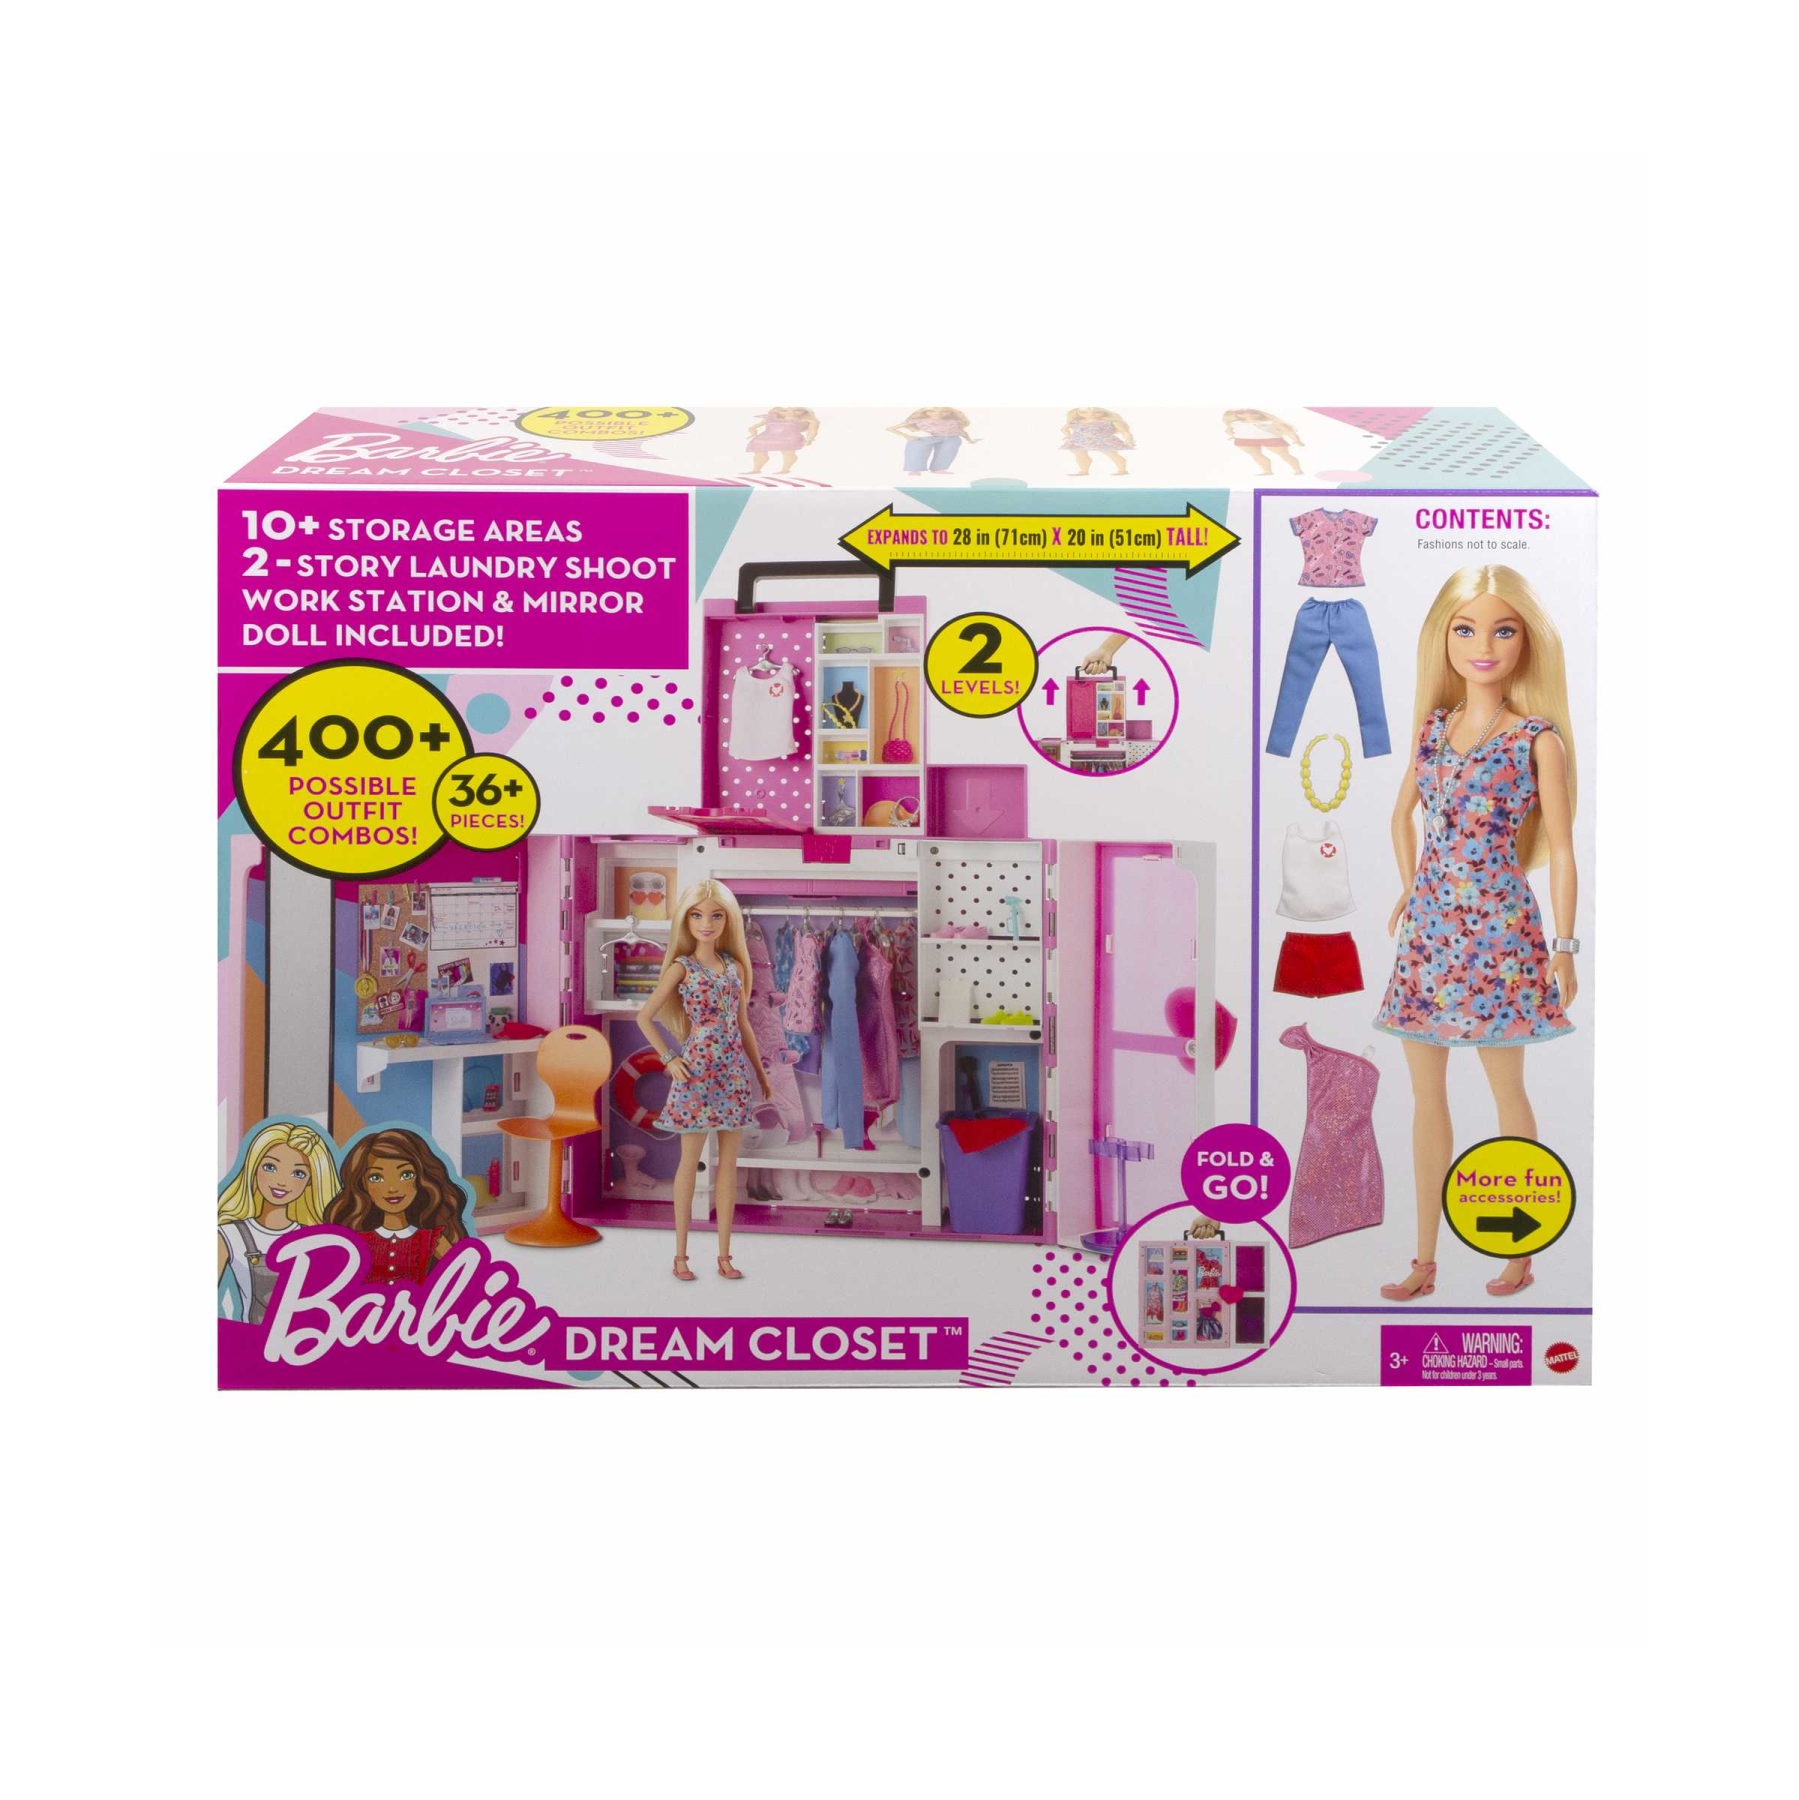 Barbie armadio dei sogni playset con bambola bionda, largo più di 60 cm, 15+ aree per riporre gli accessori, specchio, scivolo per biancheria, 30+ outfit e accessori, dai 3 anni in su - Barbie